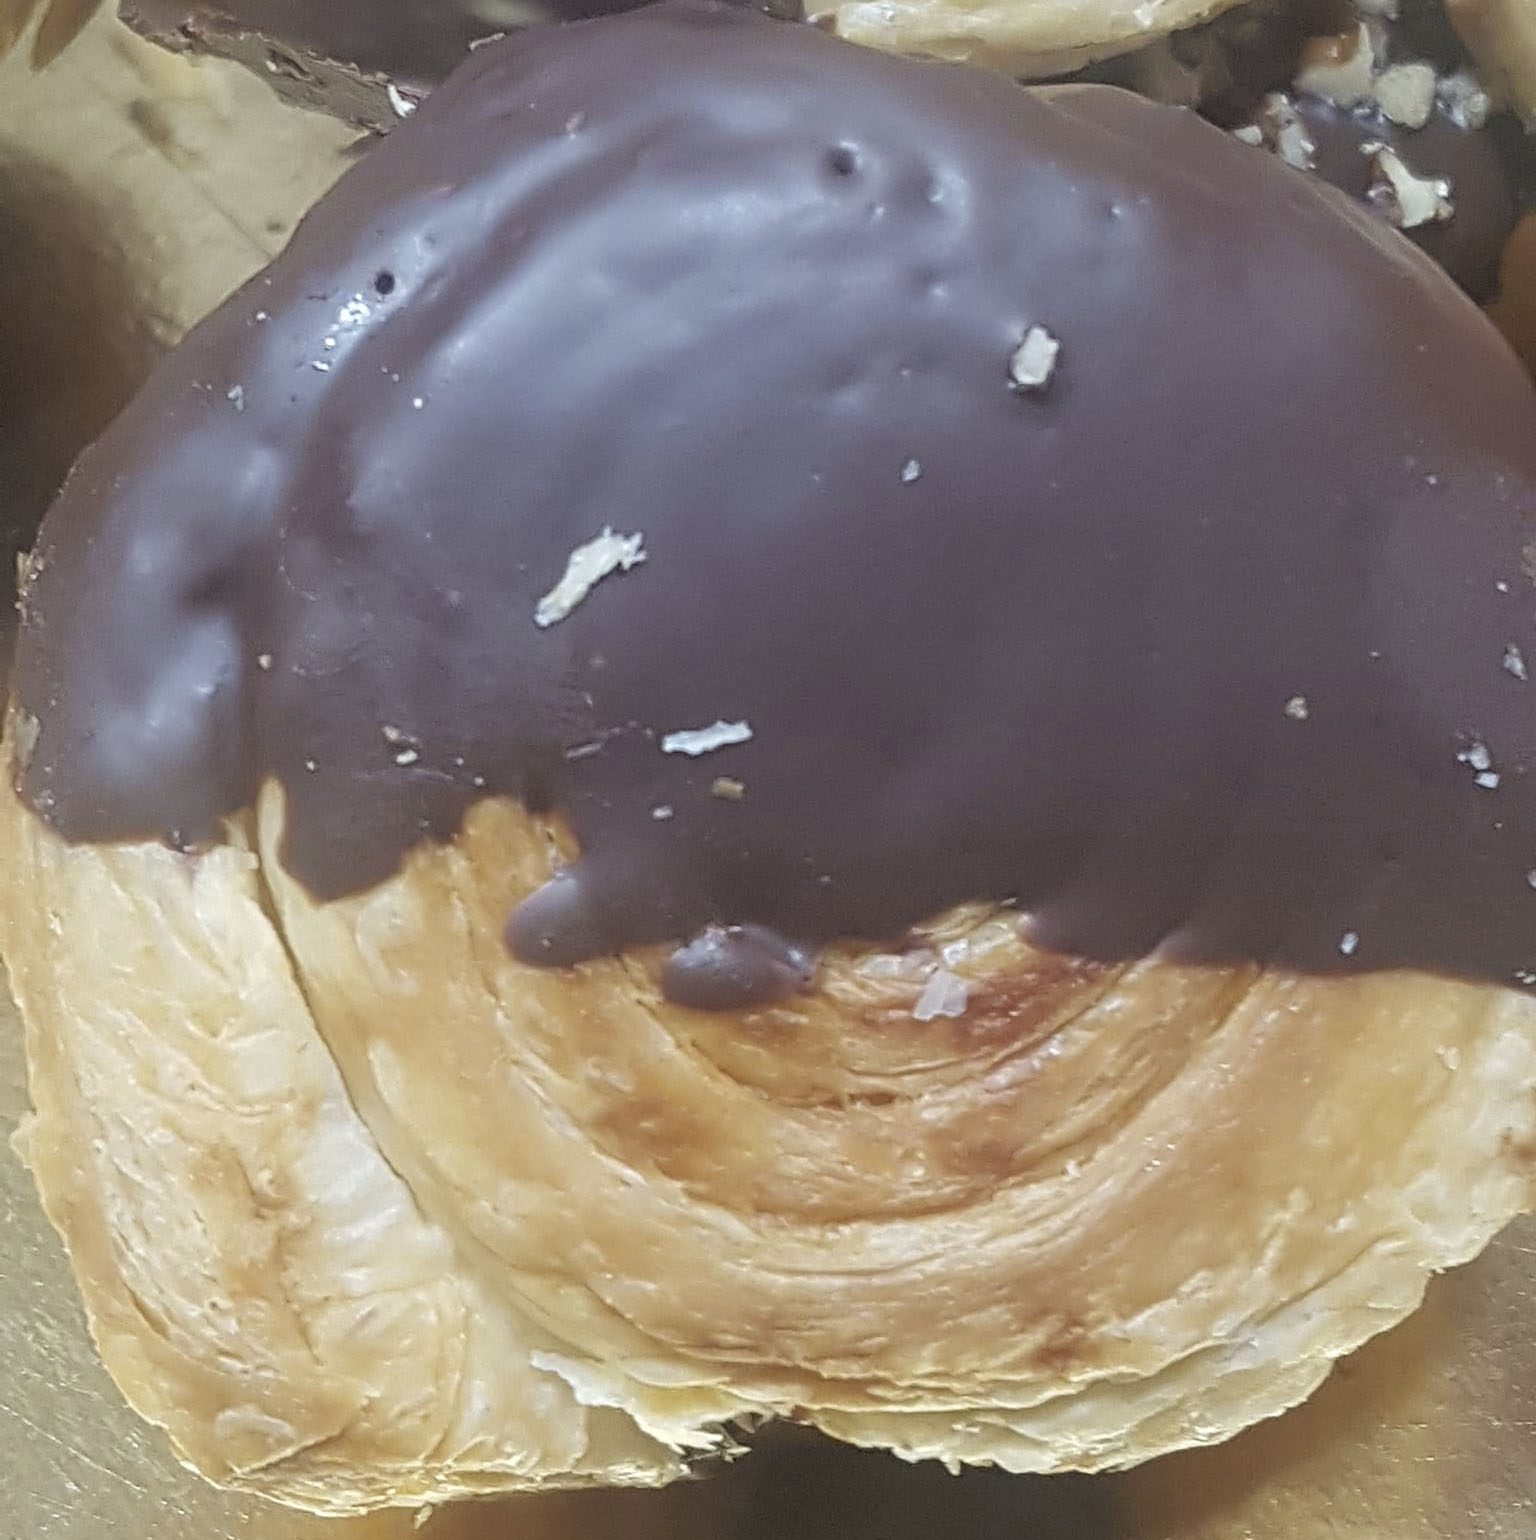 Croissants enrollados al cacao con thermomix